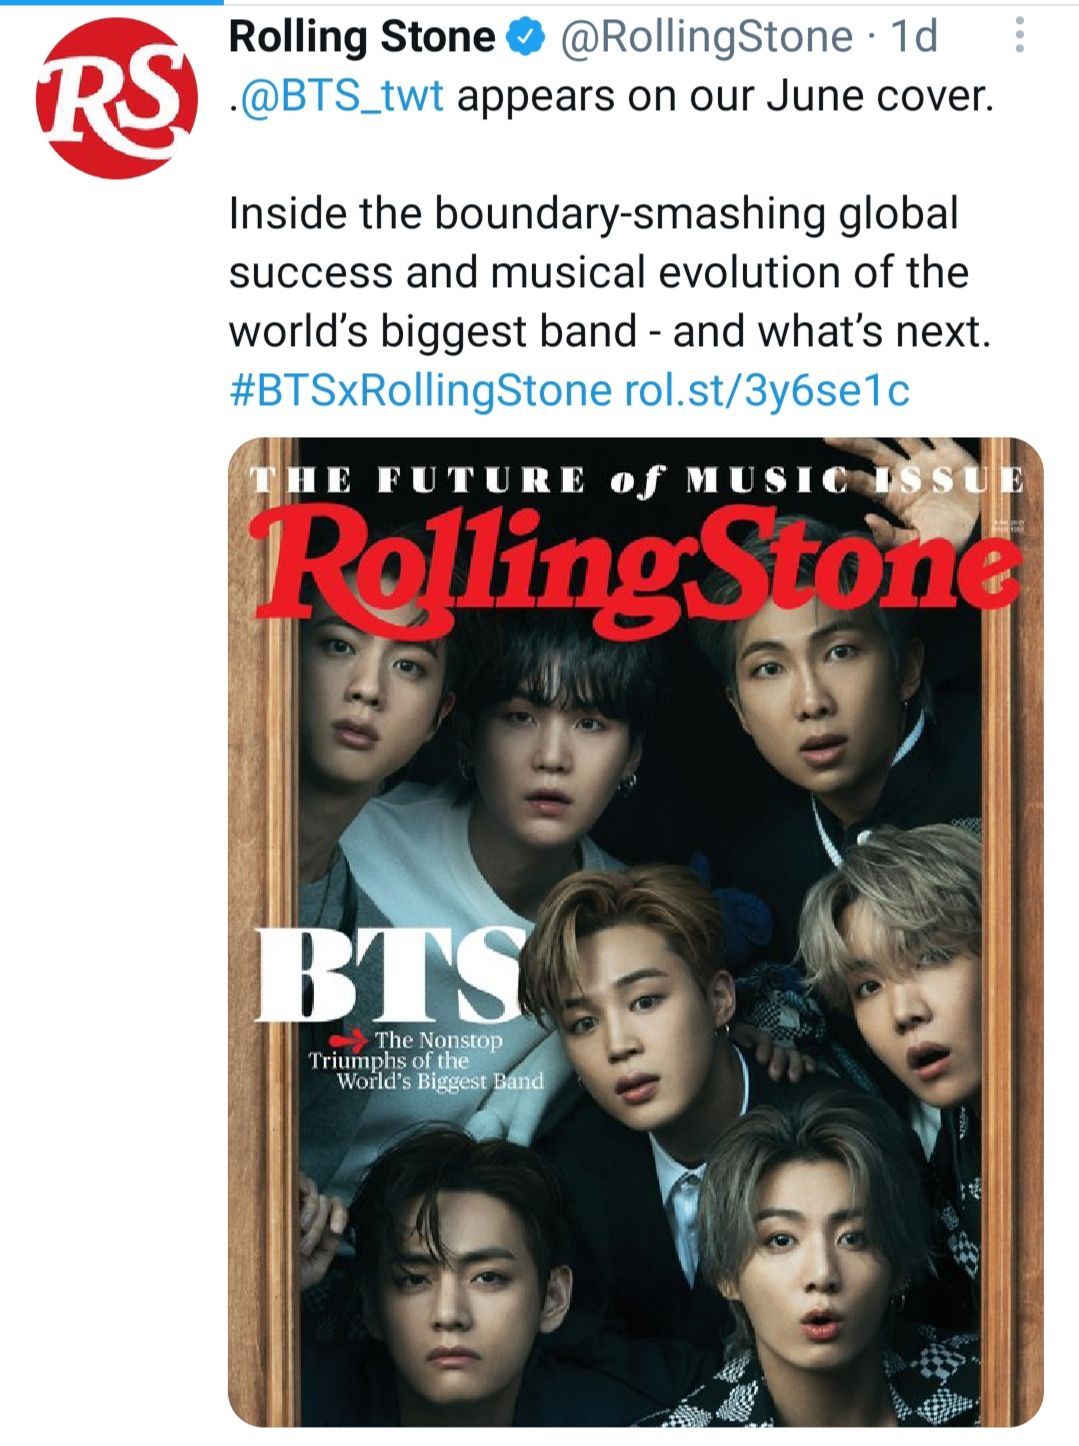 Rolling stones umumkan BTS sebagai cover majalah di bulan Juni